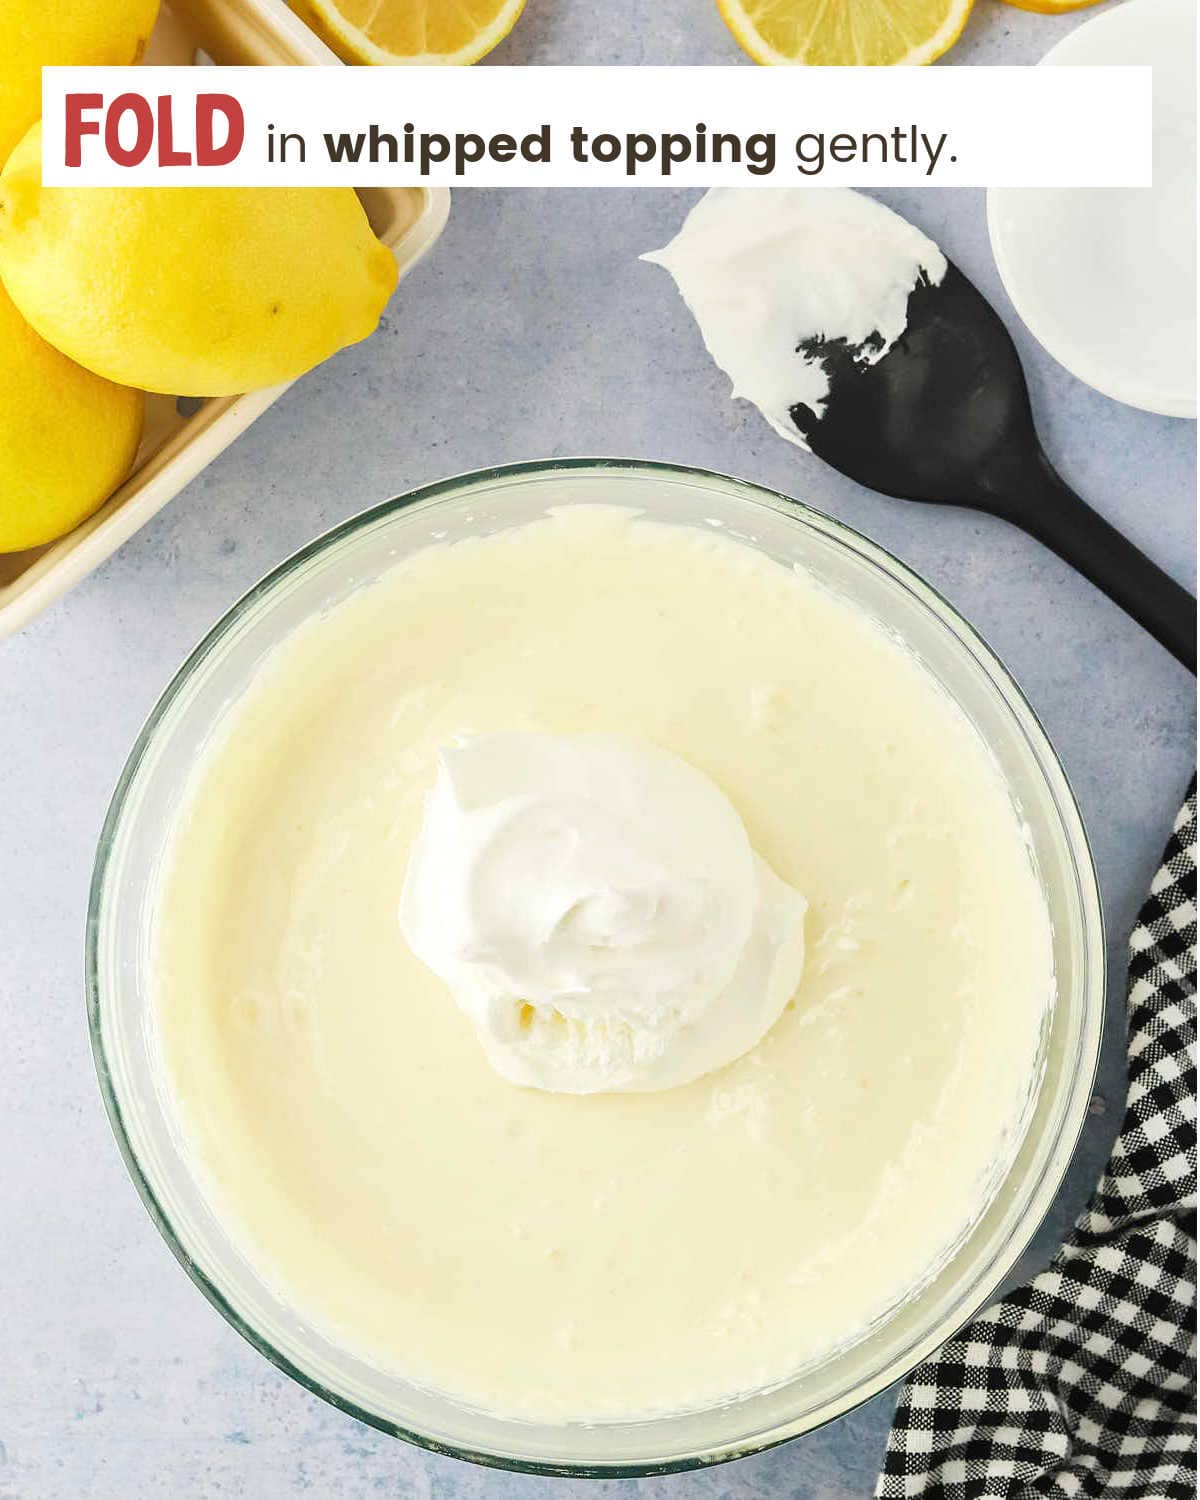 Adding whipped cream to lemonade for Frozen Lemonade Pie.